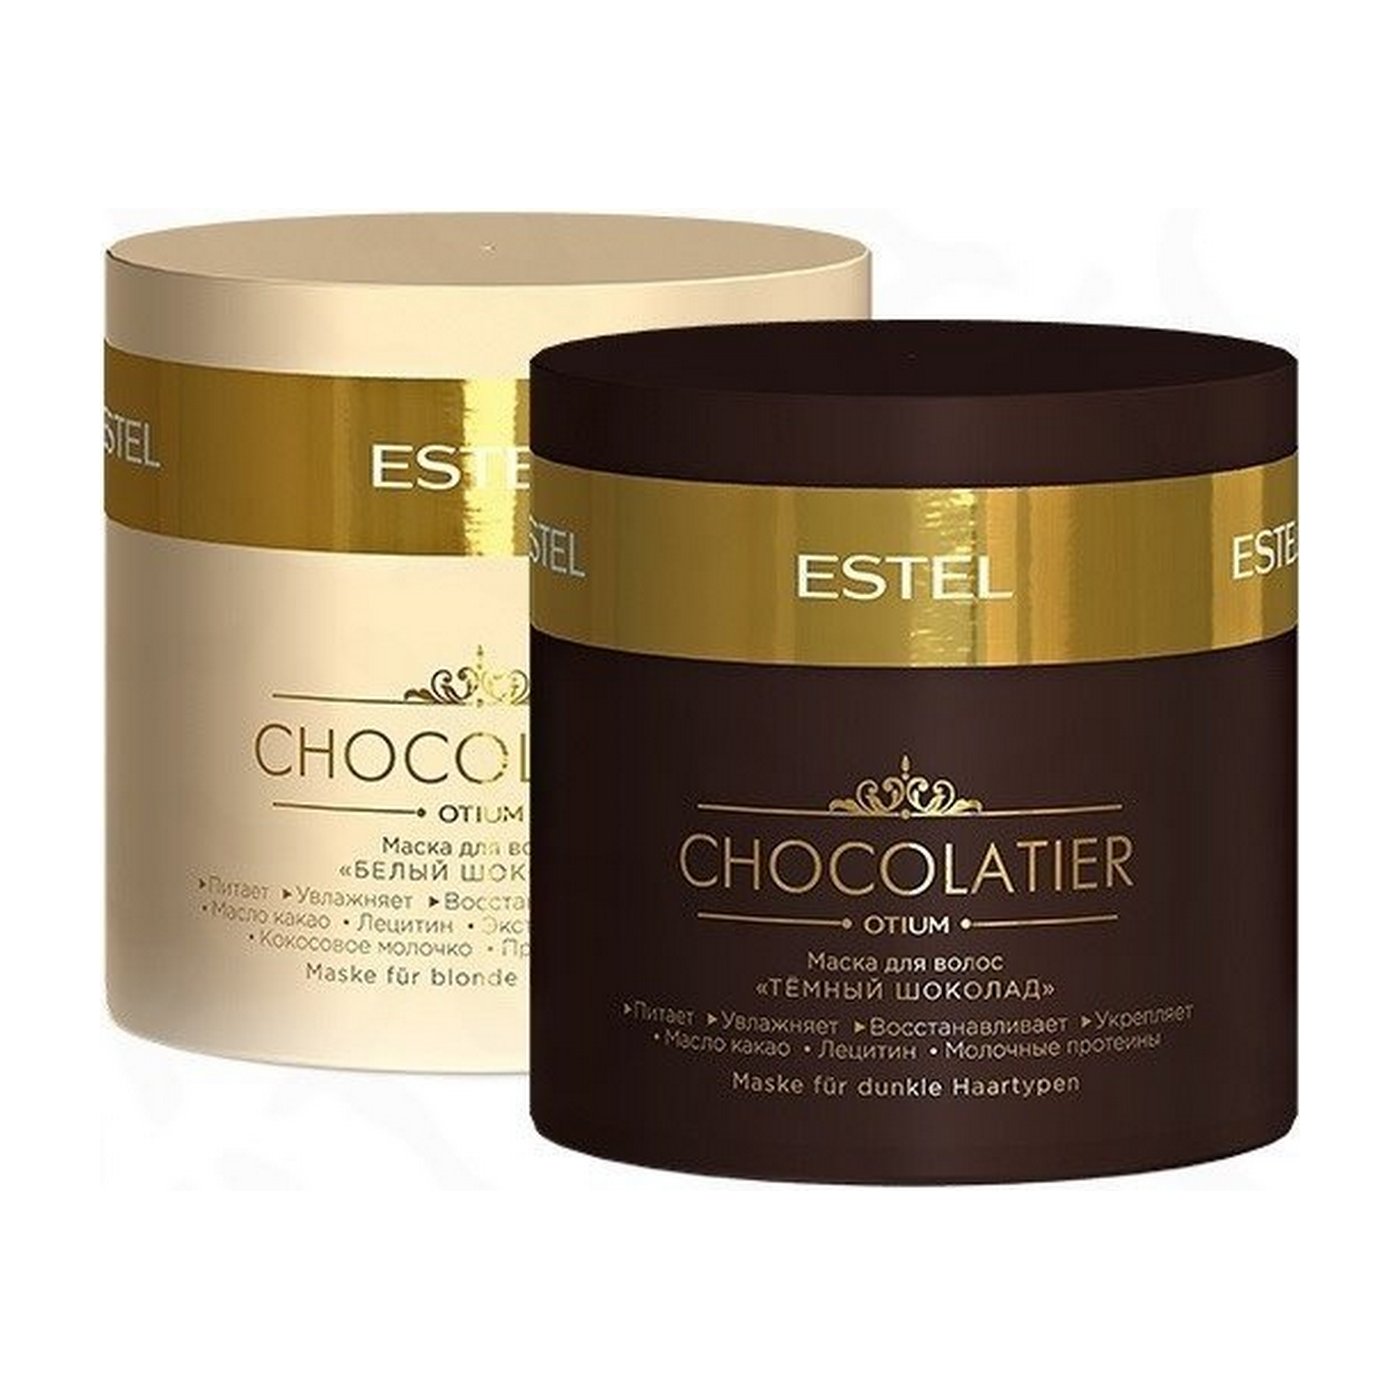 Otium маска для волос. Estel chocolatier Otium набор. Шампунь для волос «белый шоколад» Estel chocolatier. Набор шоколатье Эстель. Chocolate Otium Estel набор.